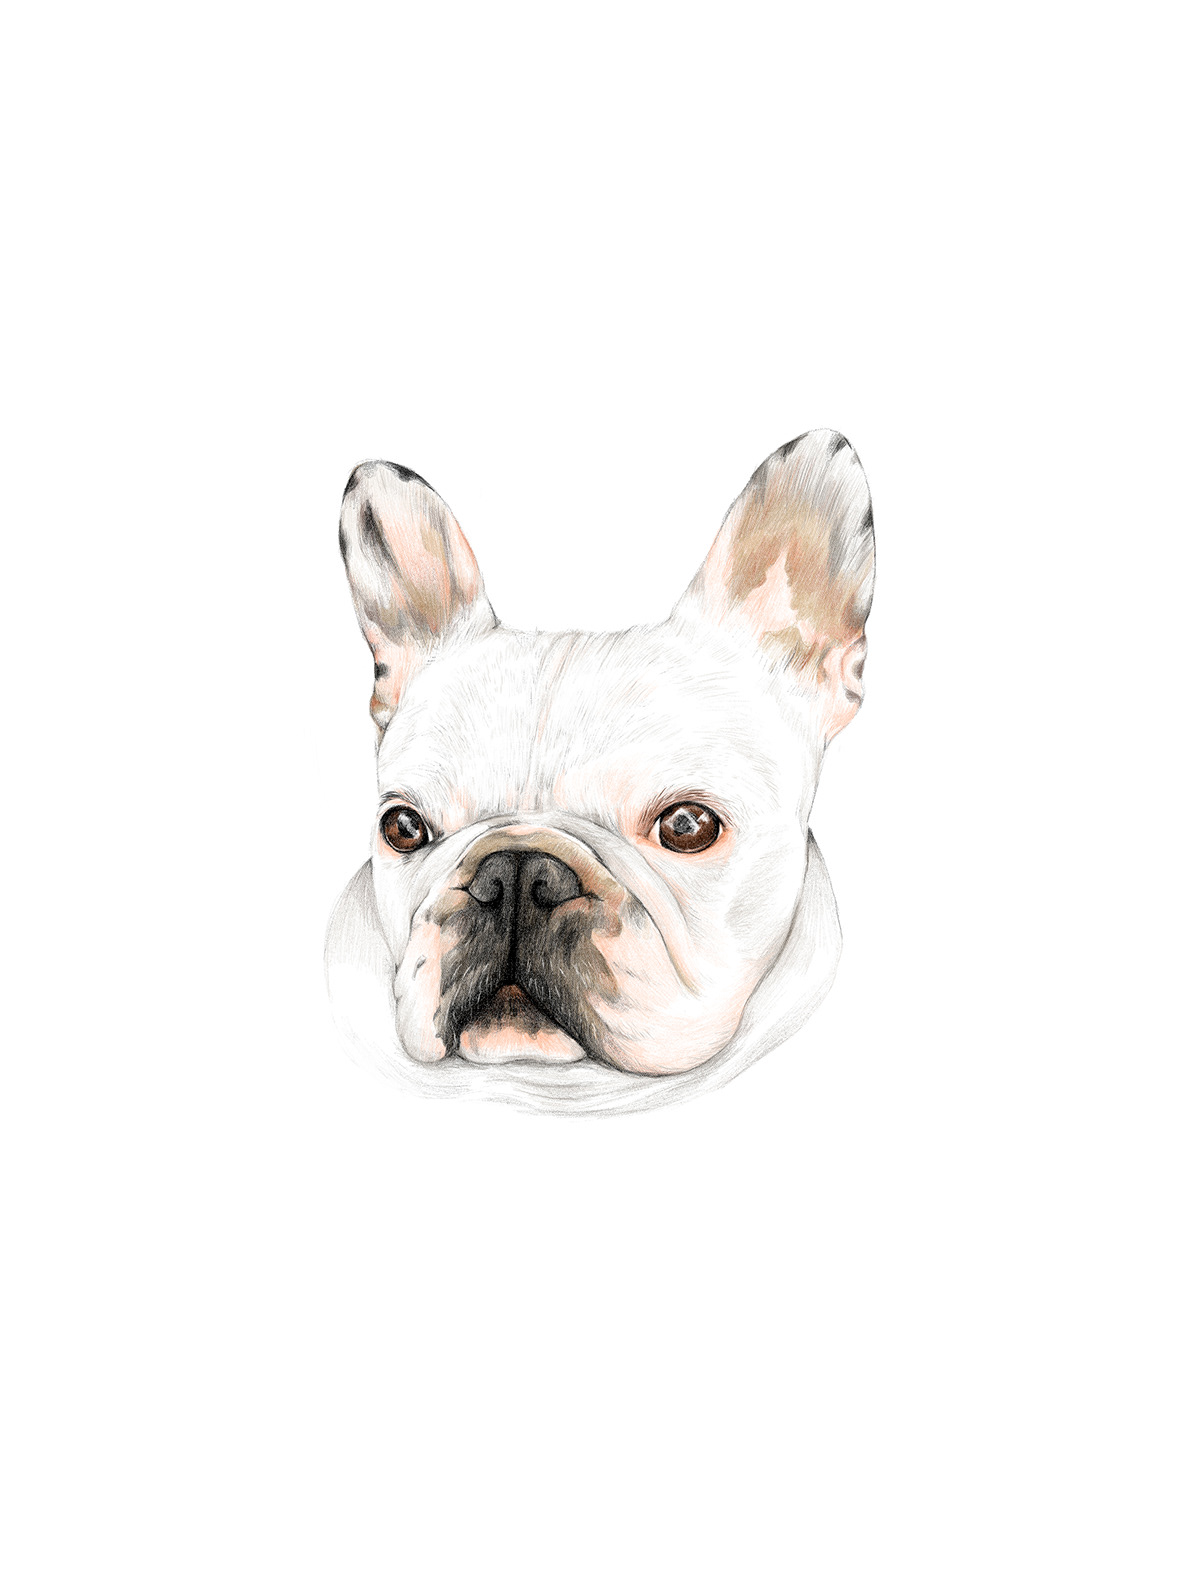 commission dog Love portrait